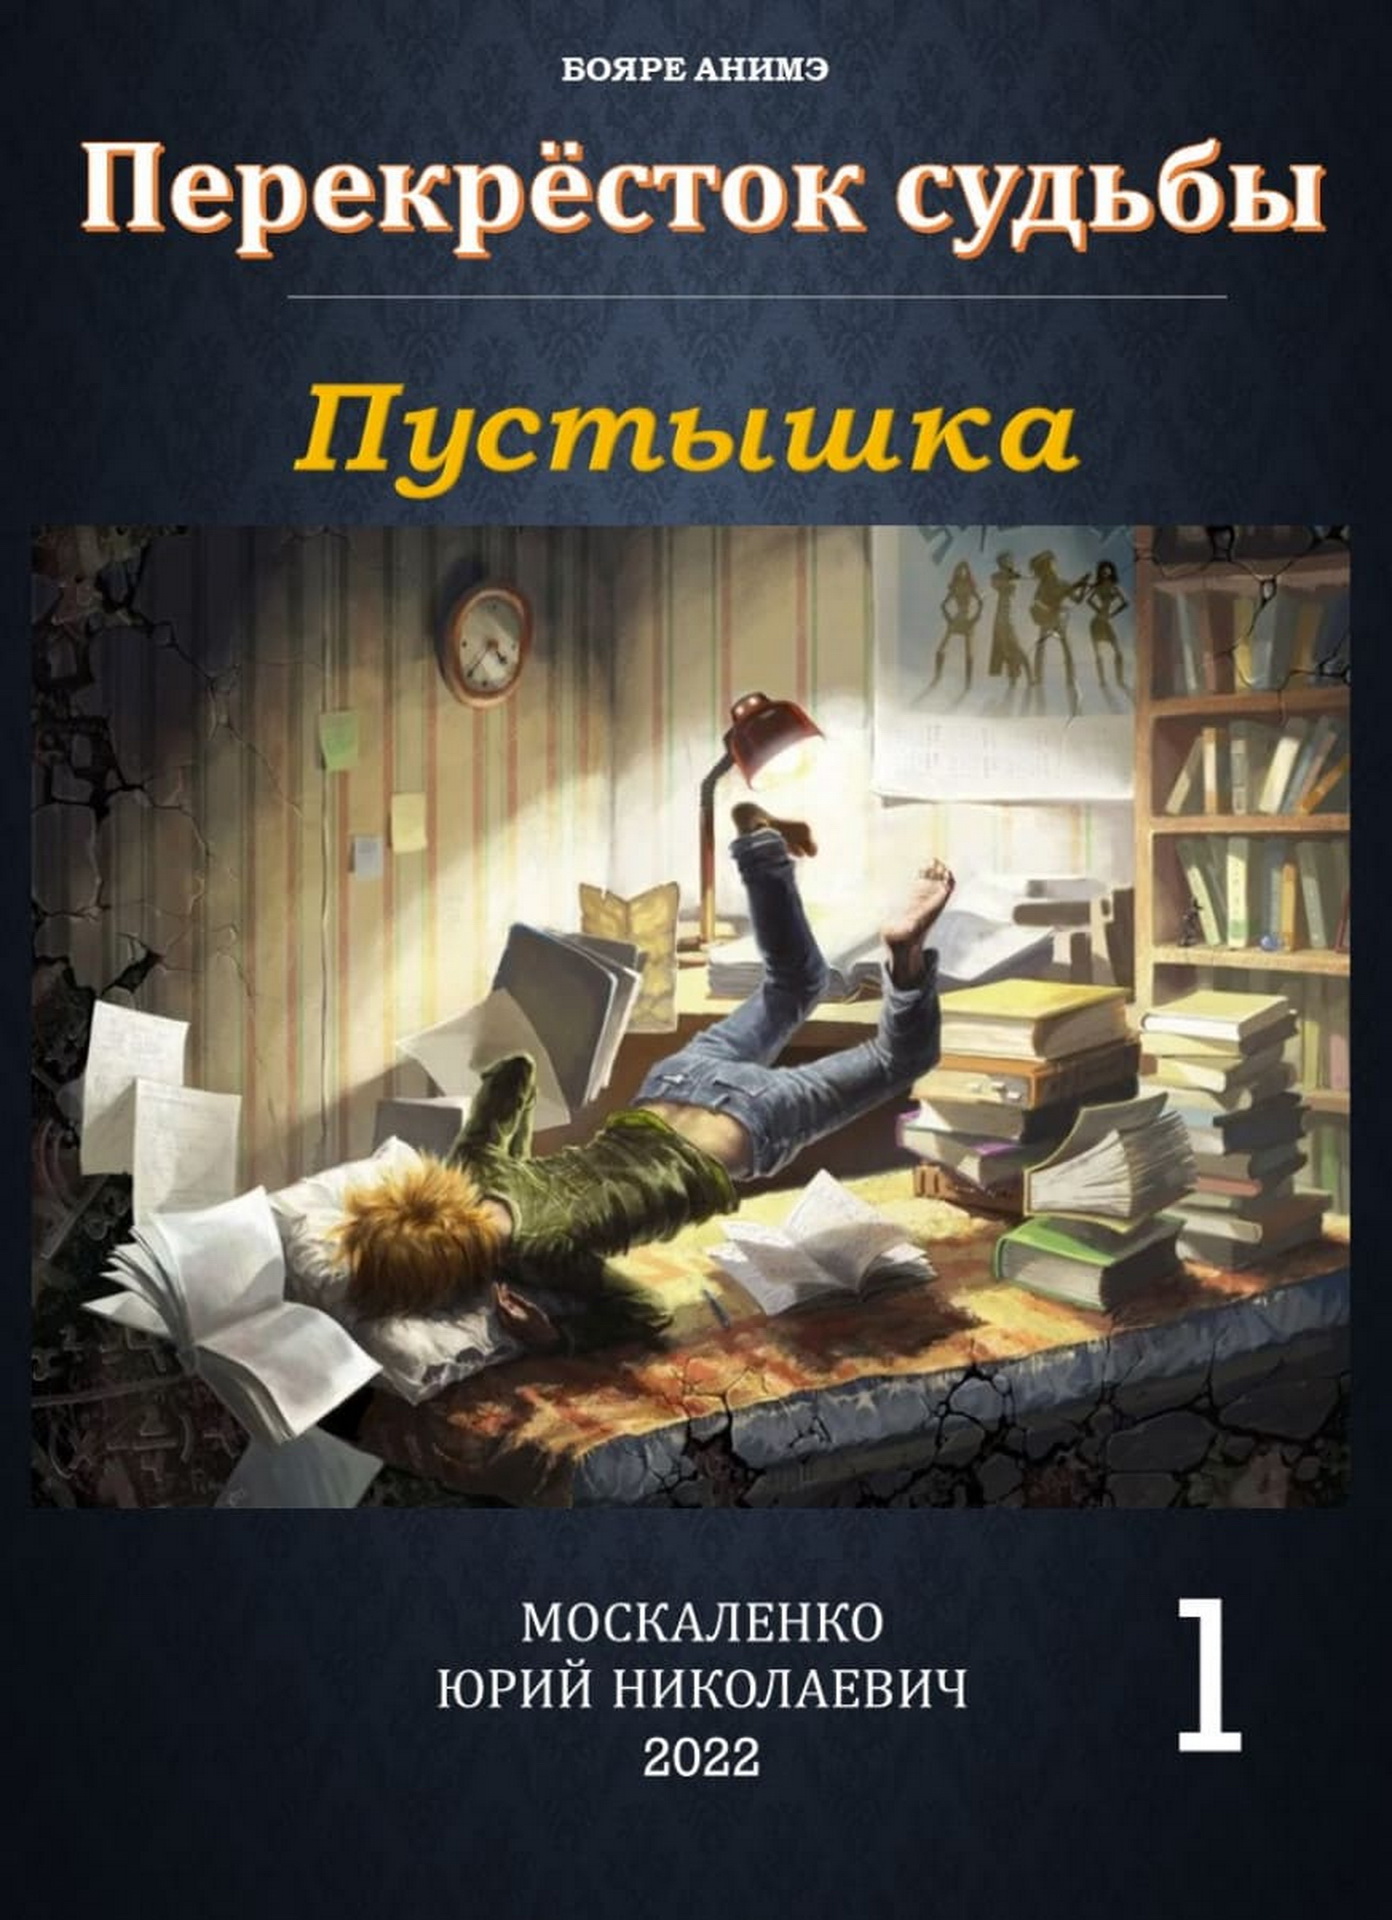 Жанр бояръ-анимэ без войн выбрал для своей новой книги Юрий Москаленко